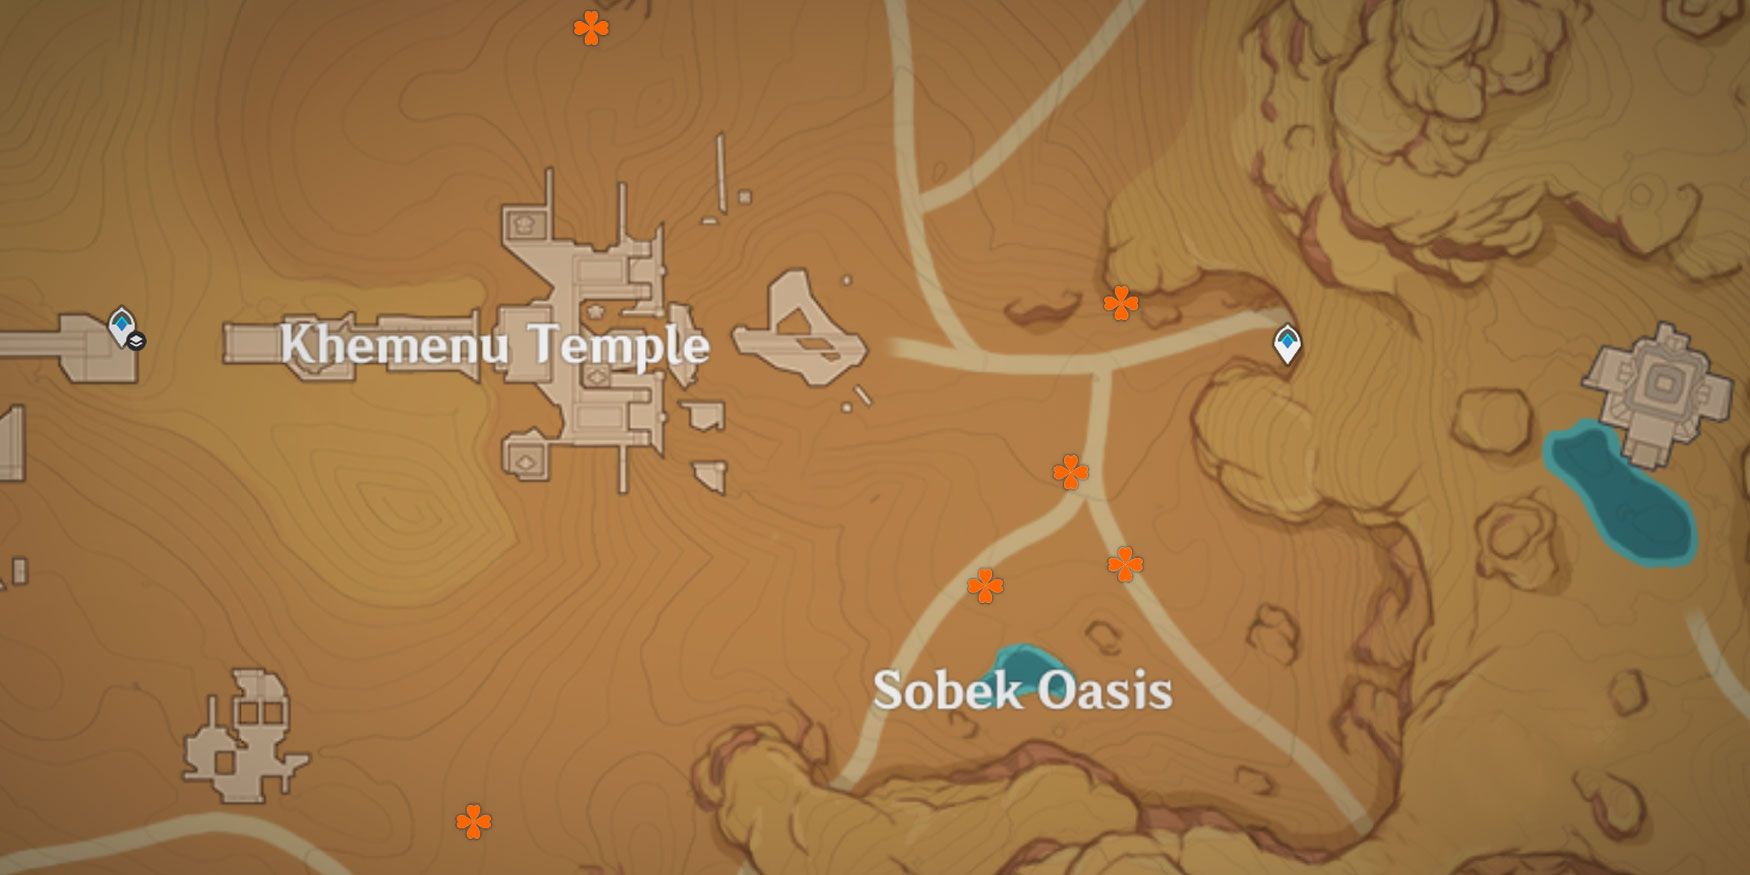 Карта оазиса Собек и храма Хемену, показывающая различные места местного деликатеса скарабея Сумеру в Genshin Impact.